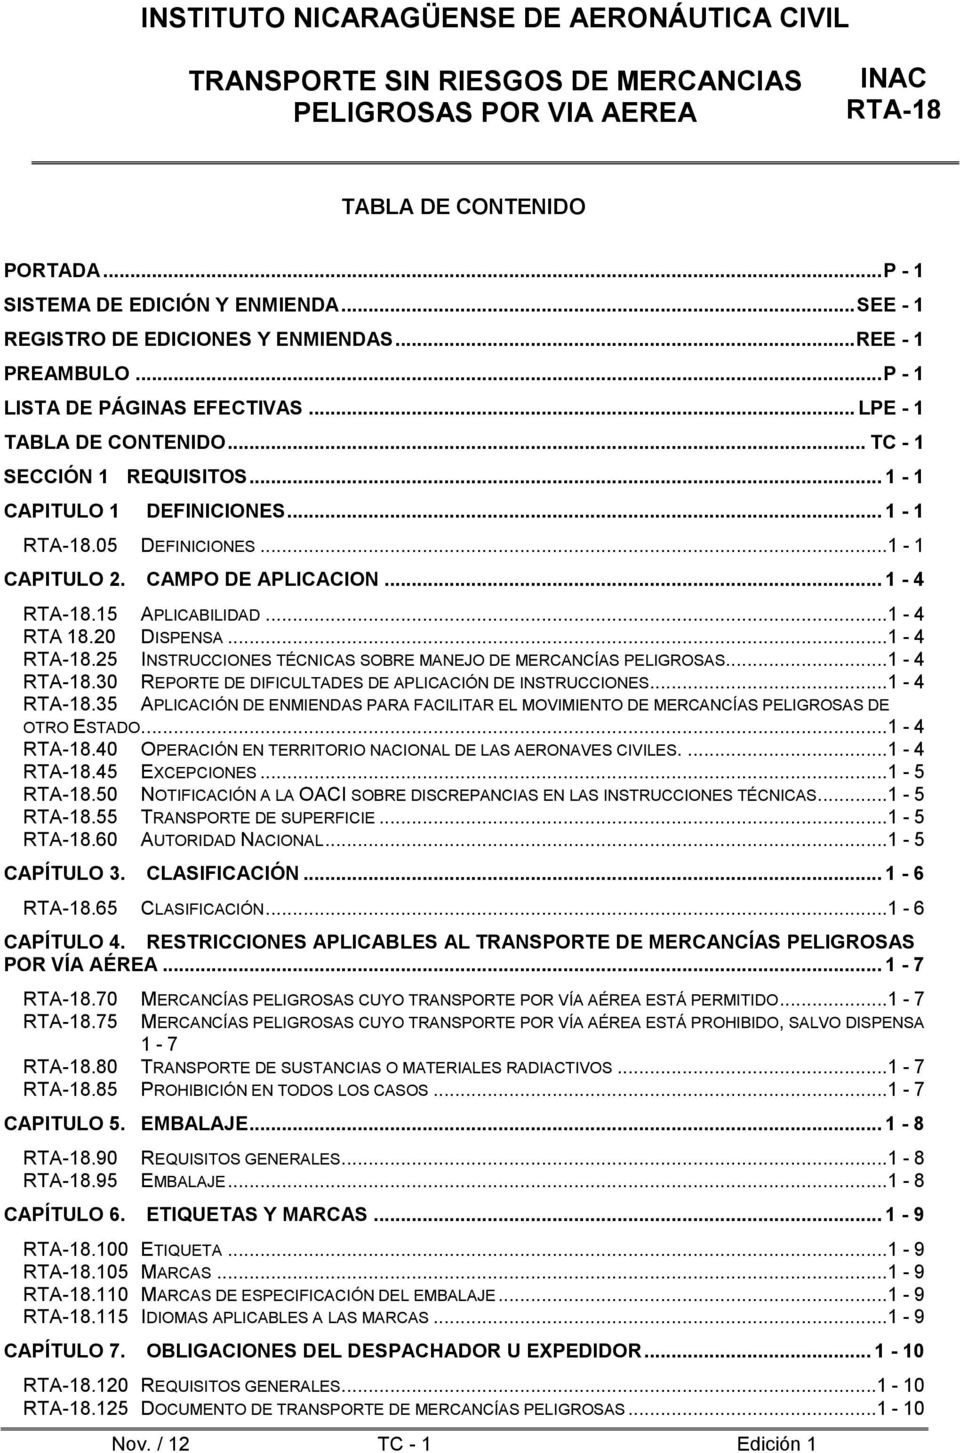 .. 1-4.30 REPORTE DE DIFICULTADES DE APLICACIÓN DE INSTRUCCIONES.... 1-4.35 APLICACIÓN DE ENMIENDAS PARA FACILITAR EL MOVIMIENTO DE MERCANCÍAS PELIGROSAS DE OTRO ESTADO.... 1-4.40 OPERACIÓN EN TERRITORIO NACIONAL DE LAS AERONAVES CIVILES.